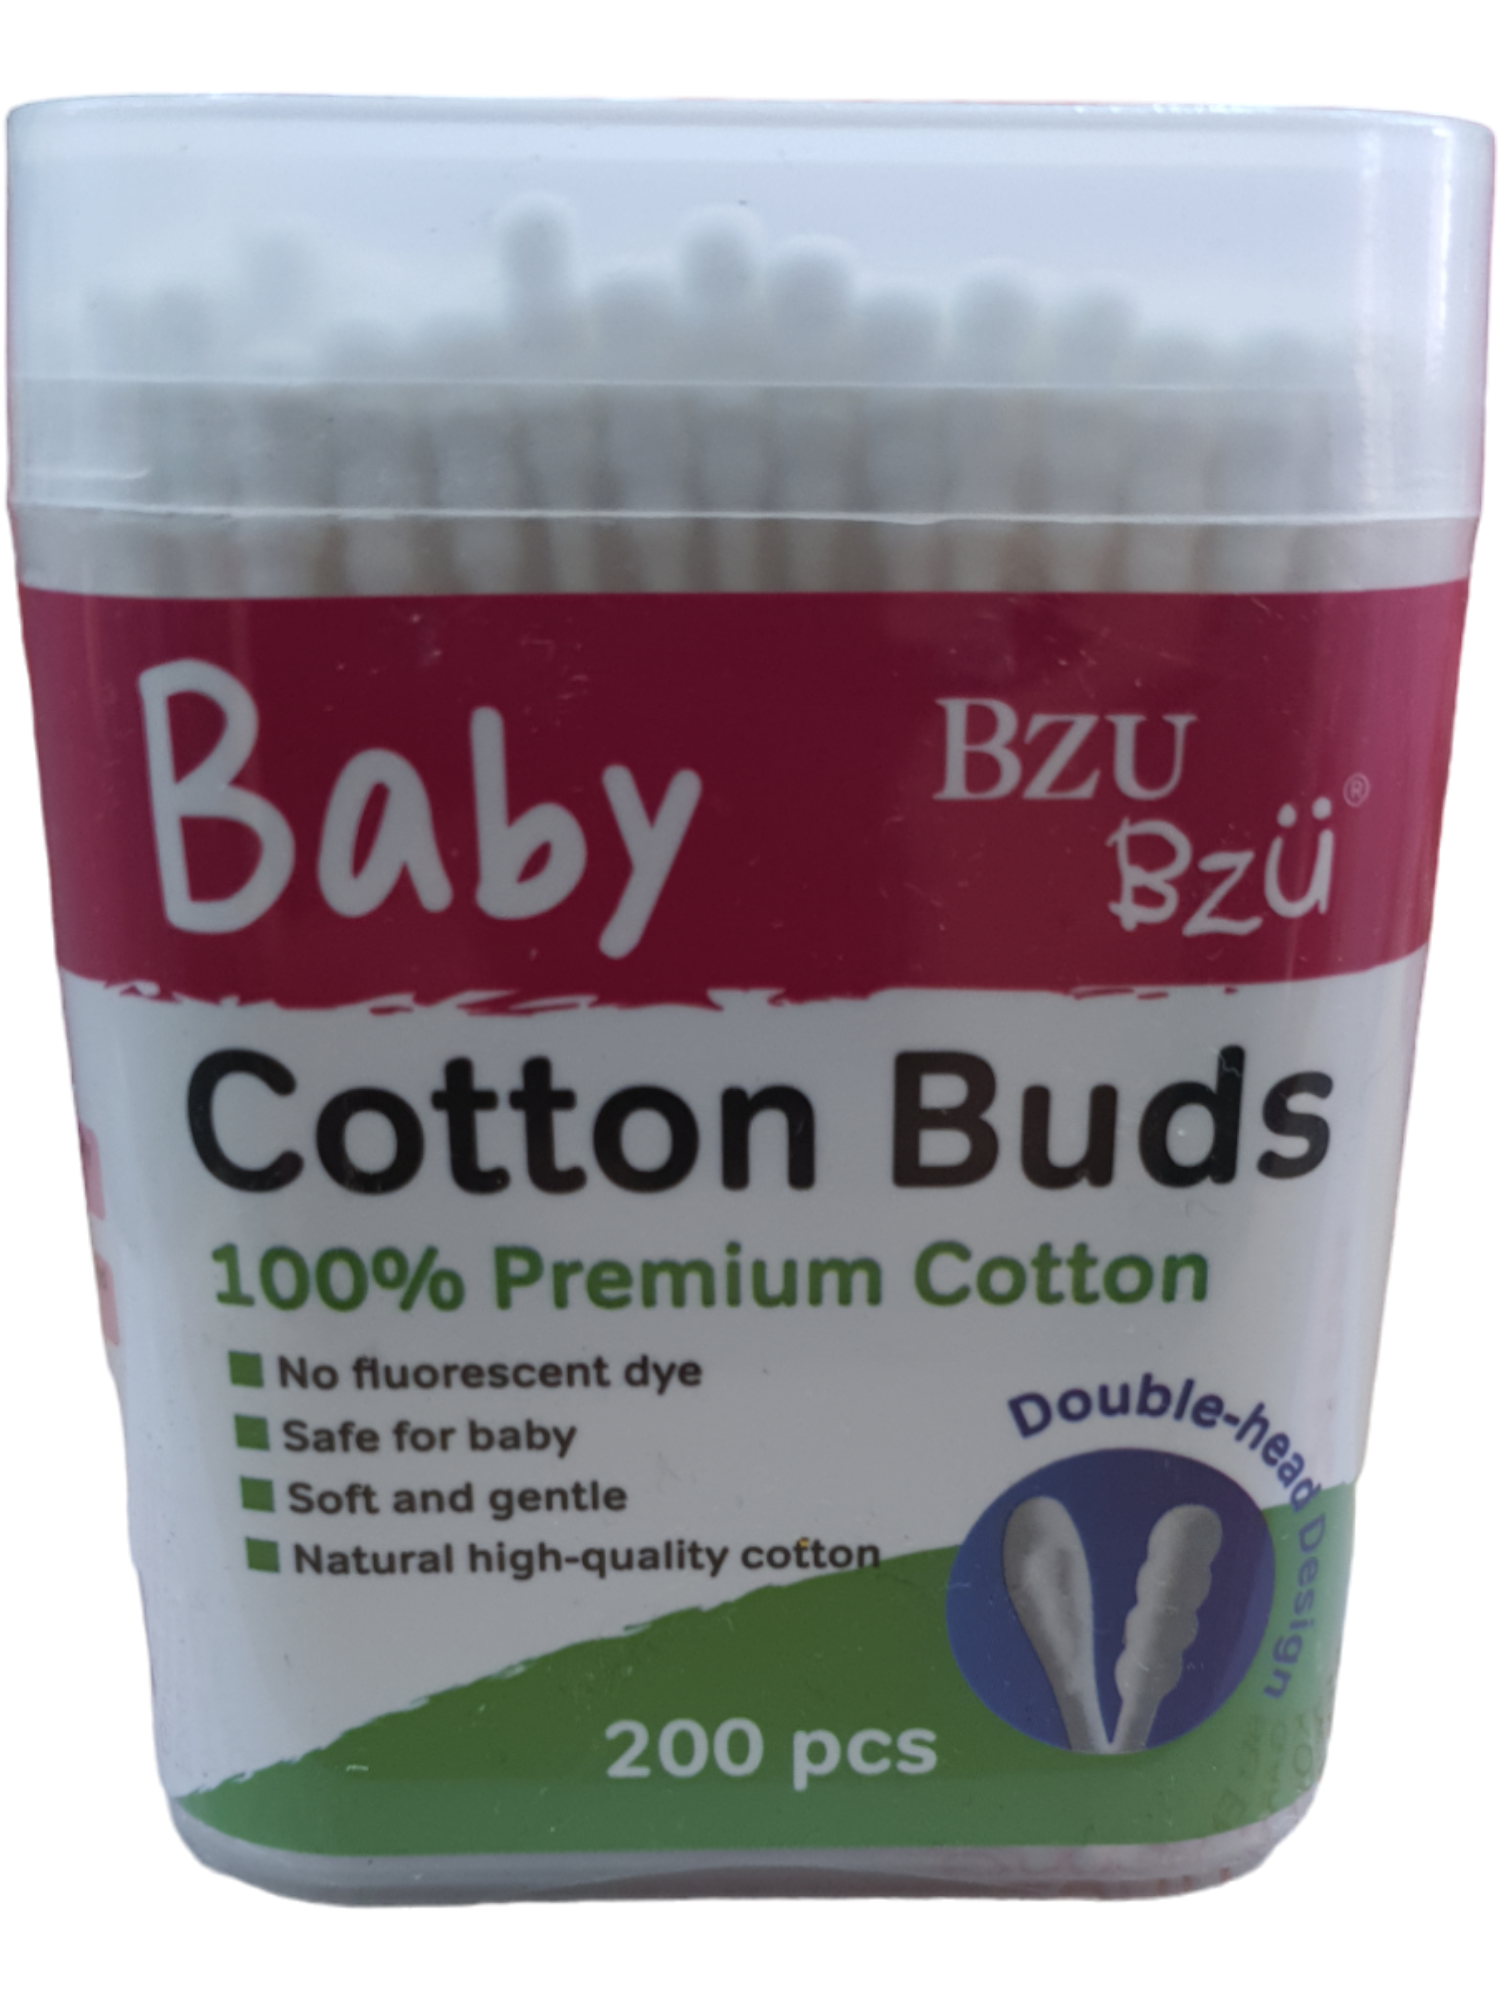 Bzu Bzu Baby Cotton Buds 100%Premium Cotton 200's